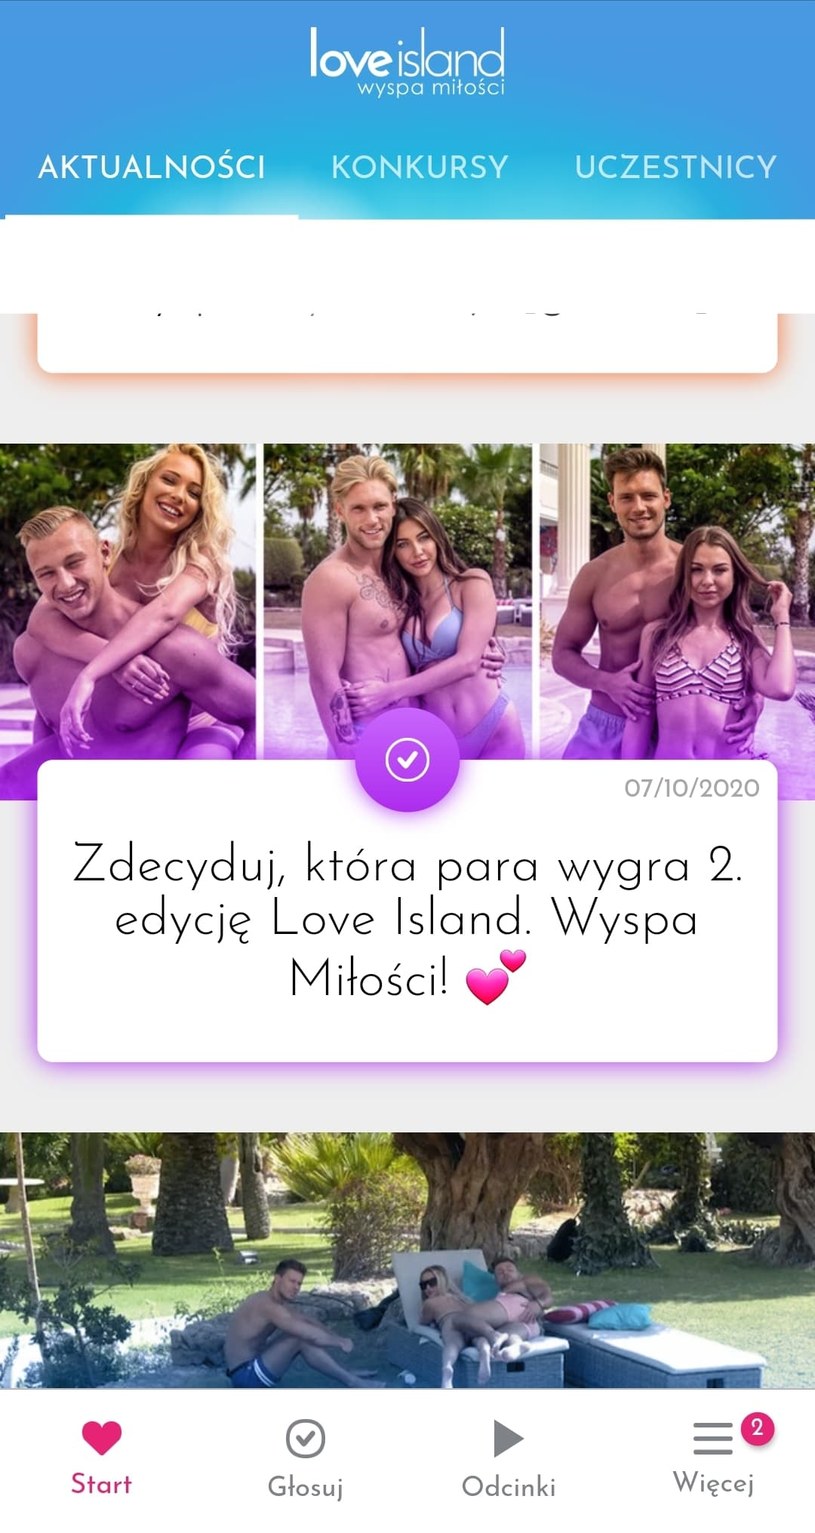 Pobierz bezpłatną aplikację "Wyspa miłości" i zdecyduj, kto ma wygrać program! /Polsat/Ipla /Polsat